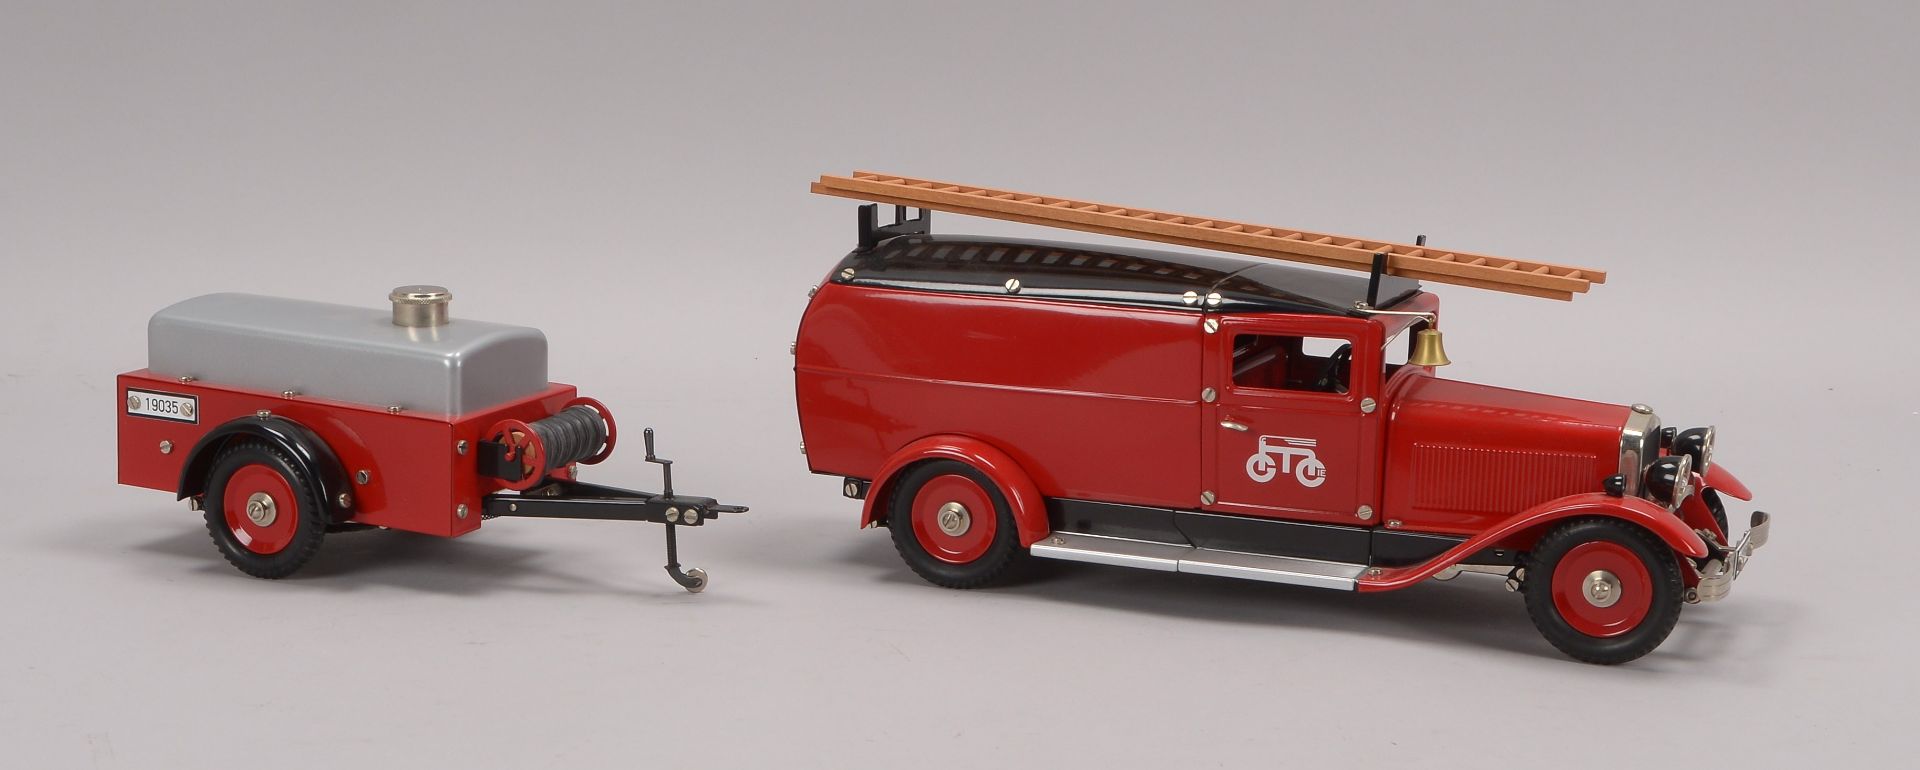 Modellfahrzeug, Maerklin -19035-, Feuerwehrwagen mit Anhaenger, Metall, Modell mit Uhrwerkantrieb,